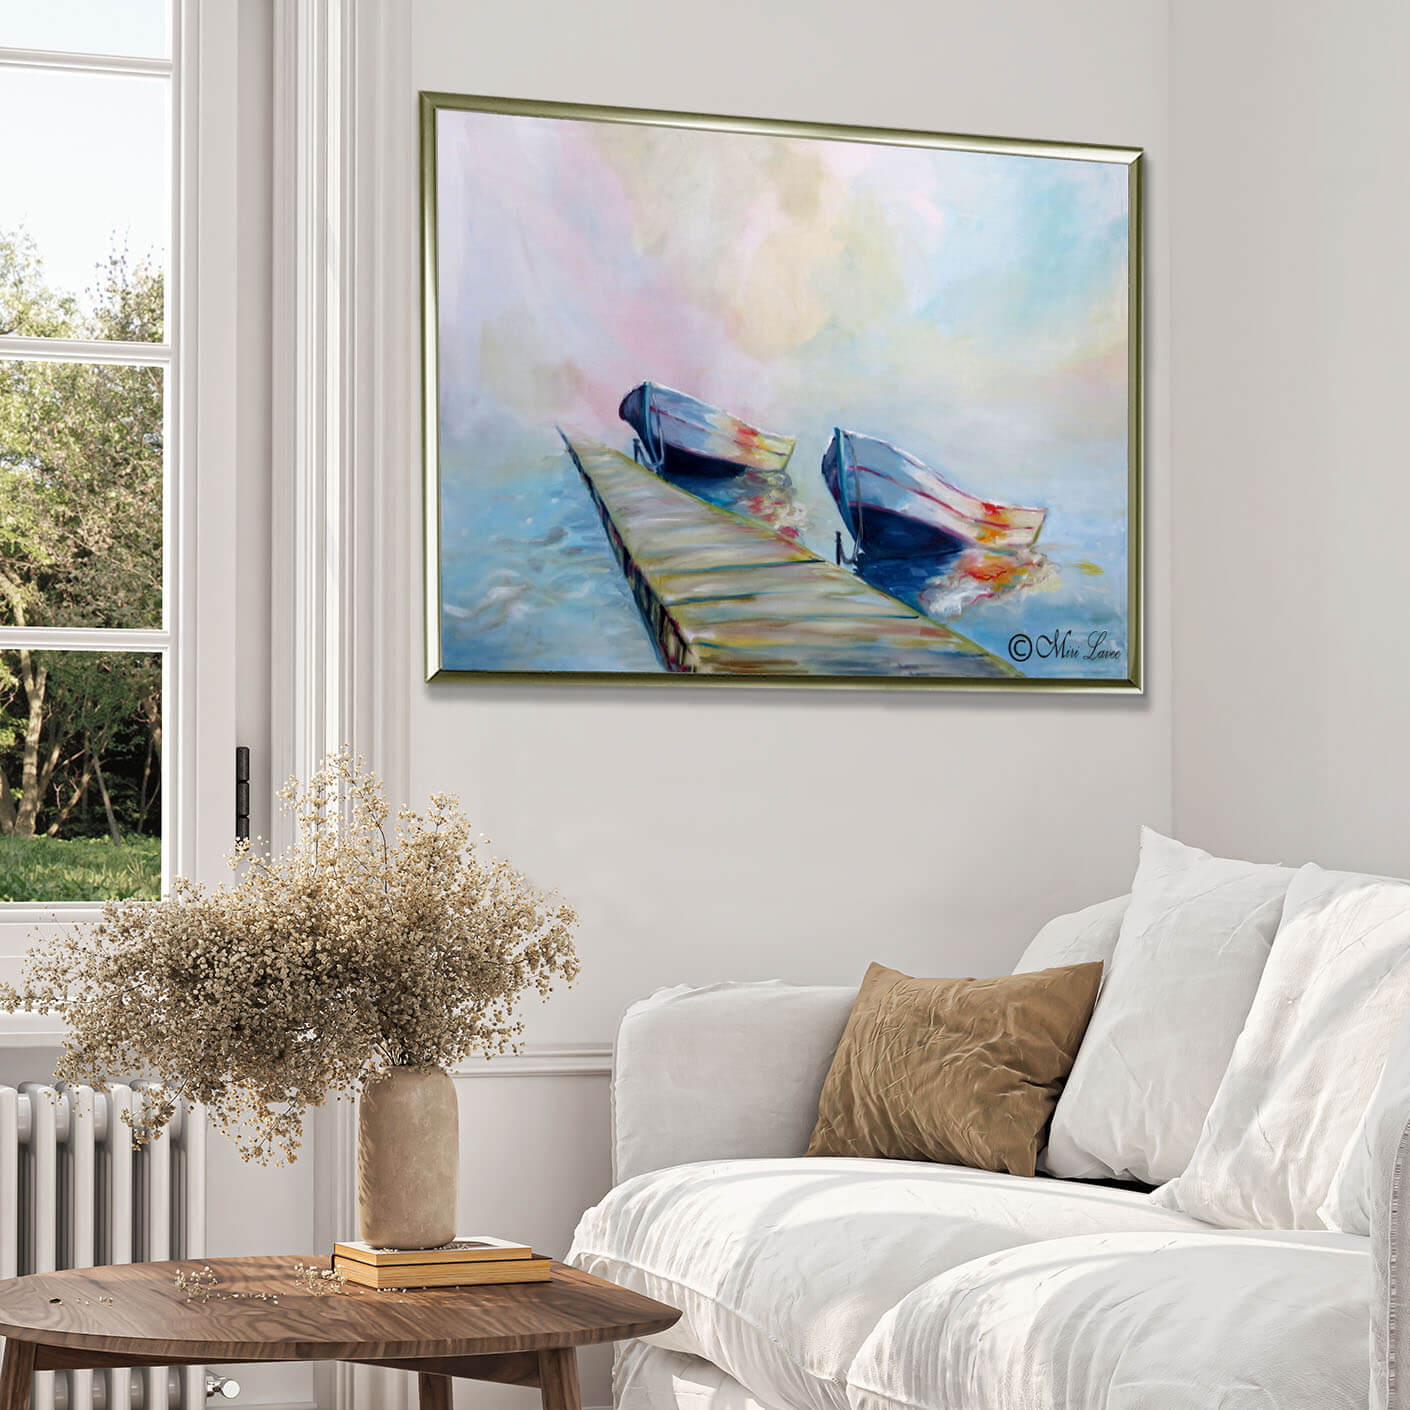 ציור של סירות בים כחול מזח וערפילי שחר צבעוניים בסלון לבן ציירת מירי לביא